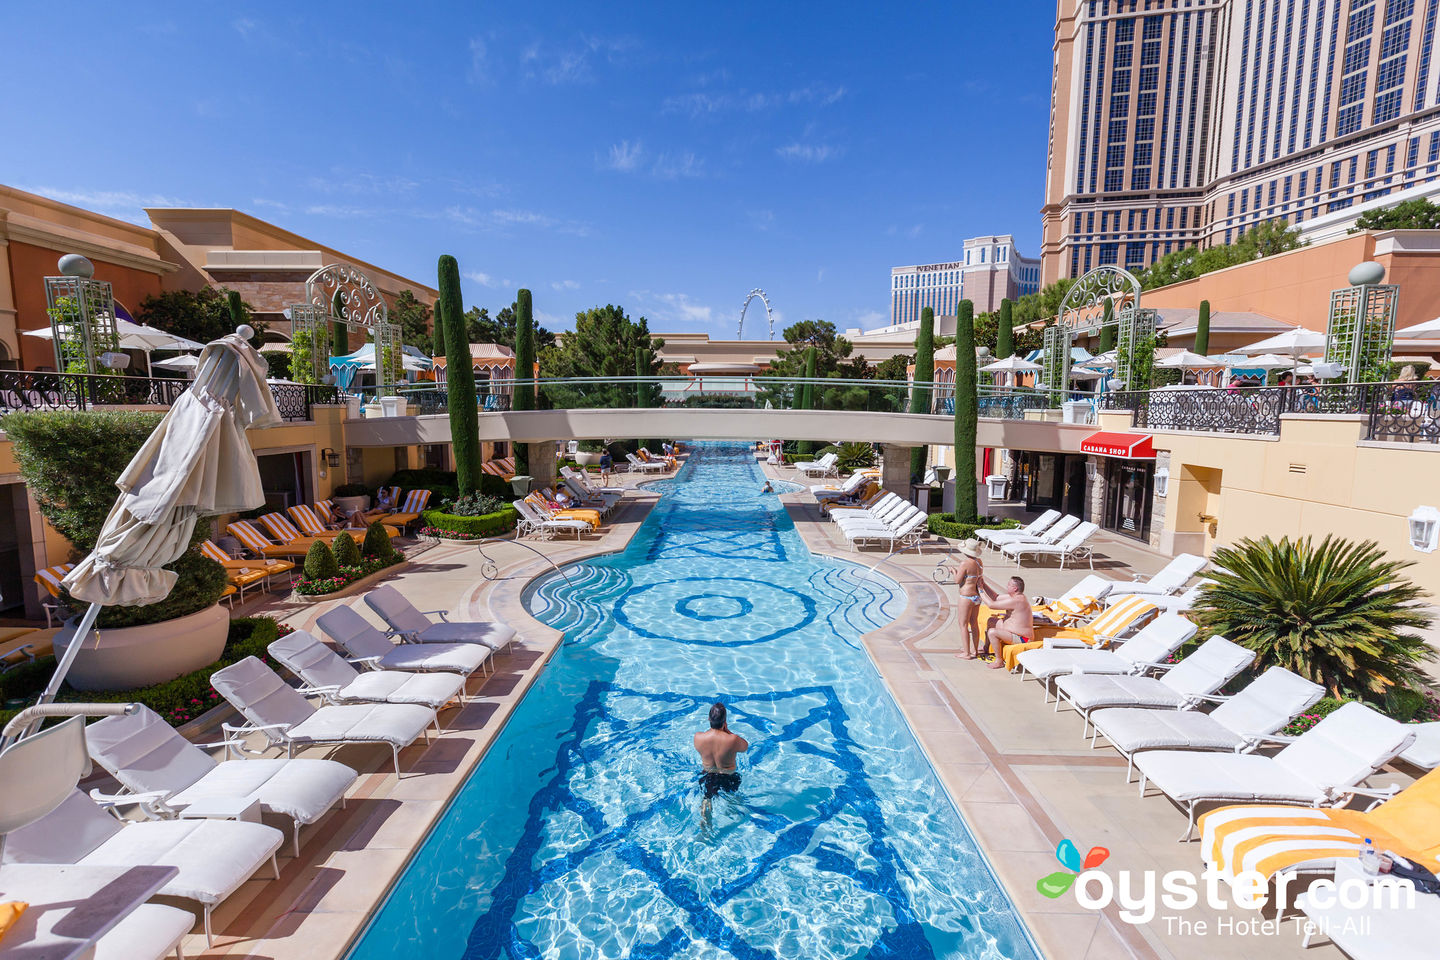 Hotels in Las Vegas with Pools, Las Vegas, NV, Hotel Rooms, Las Vegas  Hotel with Pools